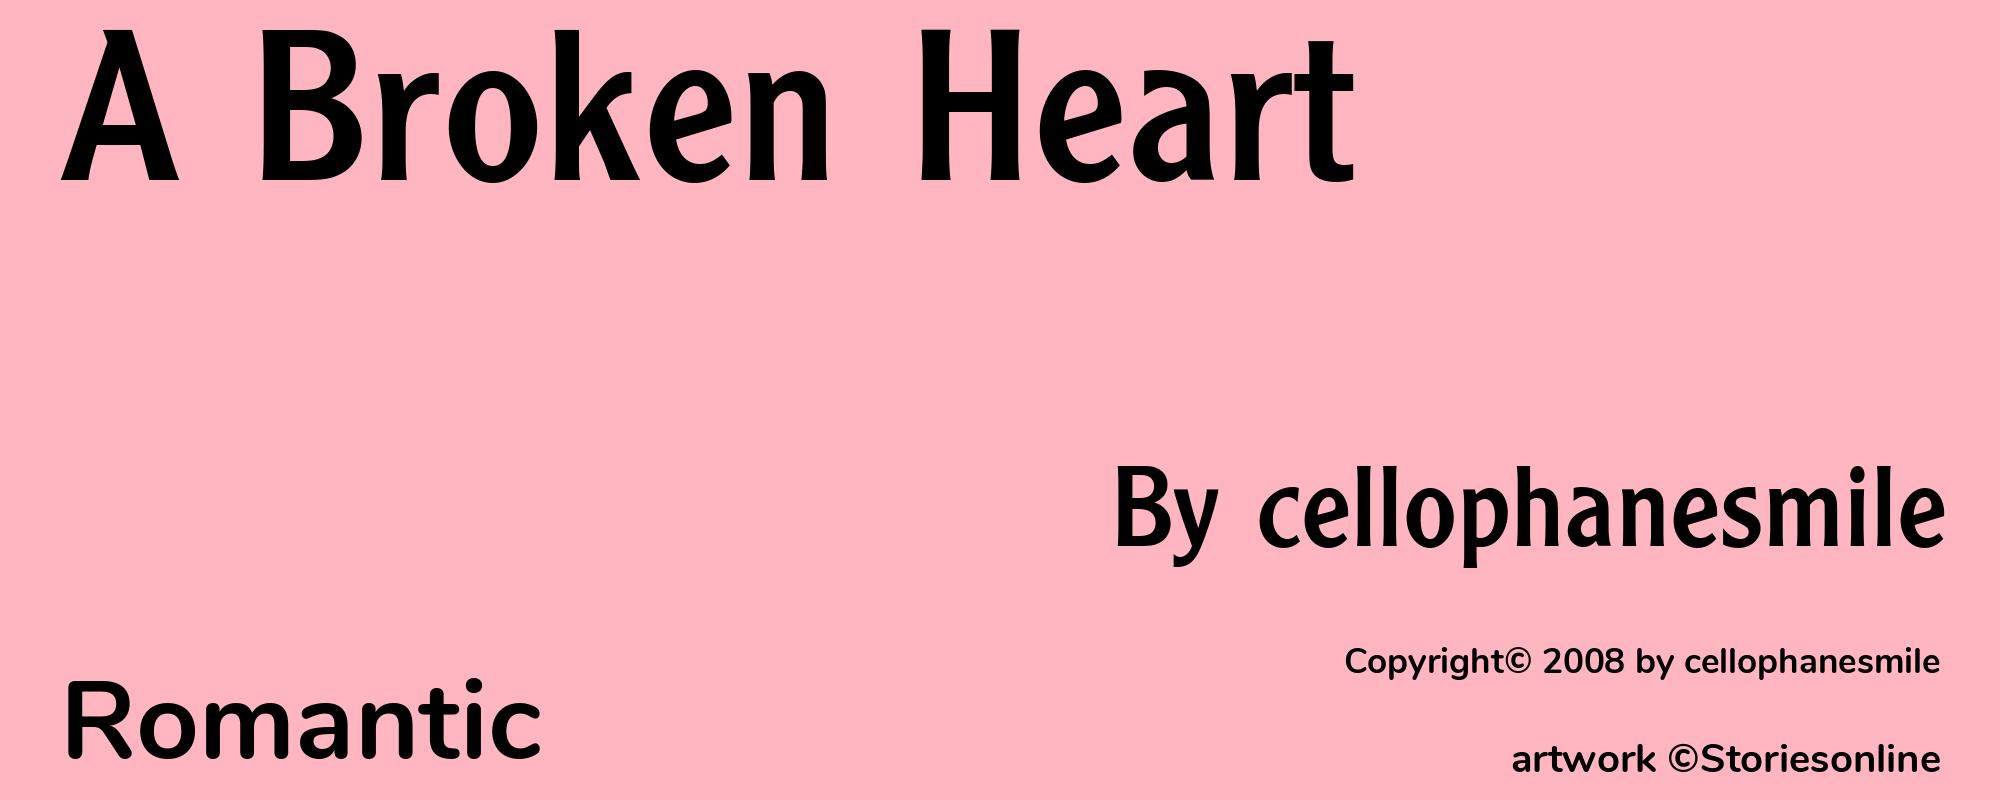 A Broken Heart - Cover